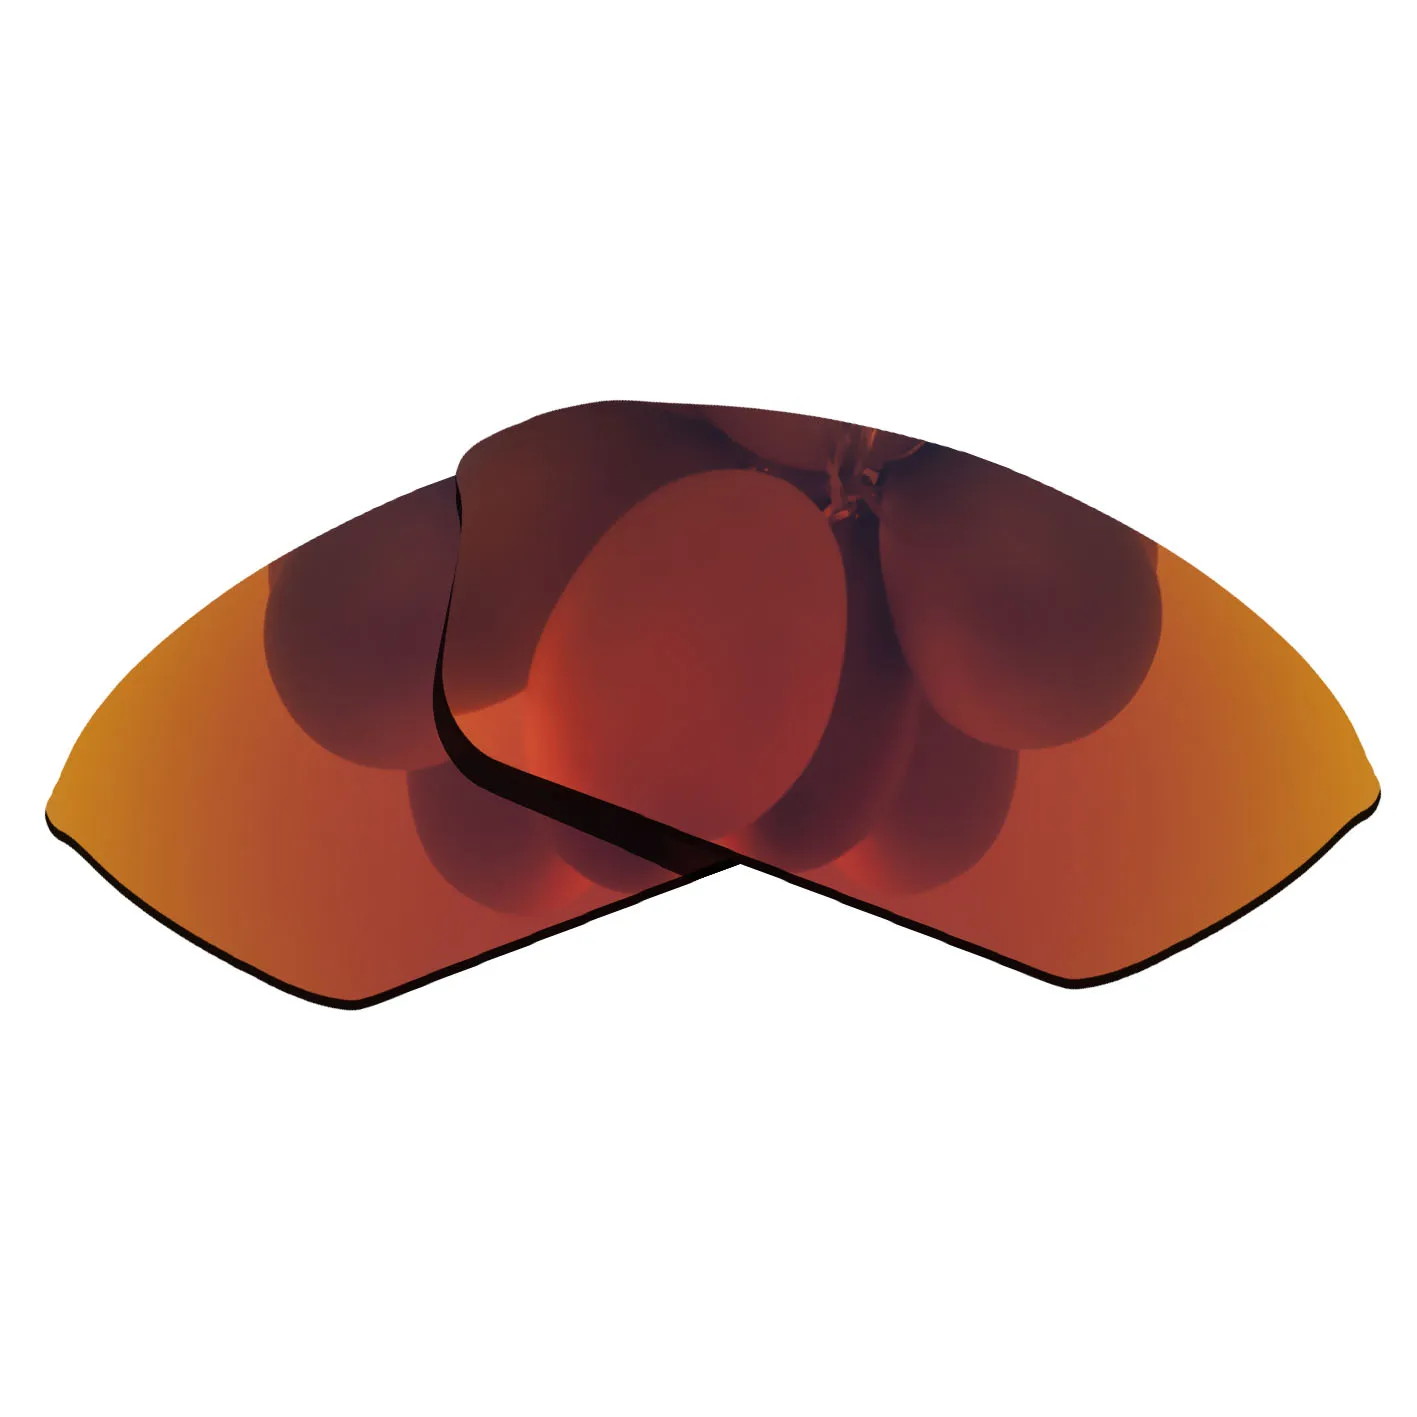 

Оранжево-красные зеркальные поляризованные Сменные линзы для полупроводной оправы солнцезащитных очков XL 100% UVA & UVB